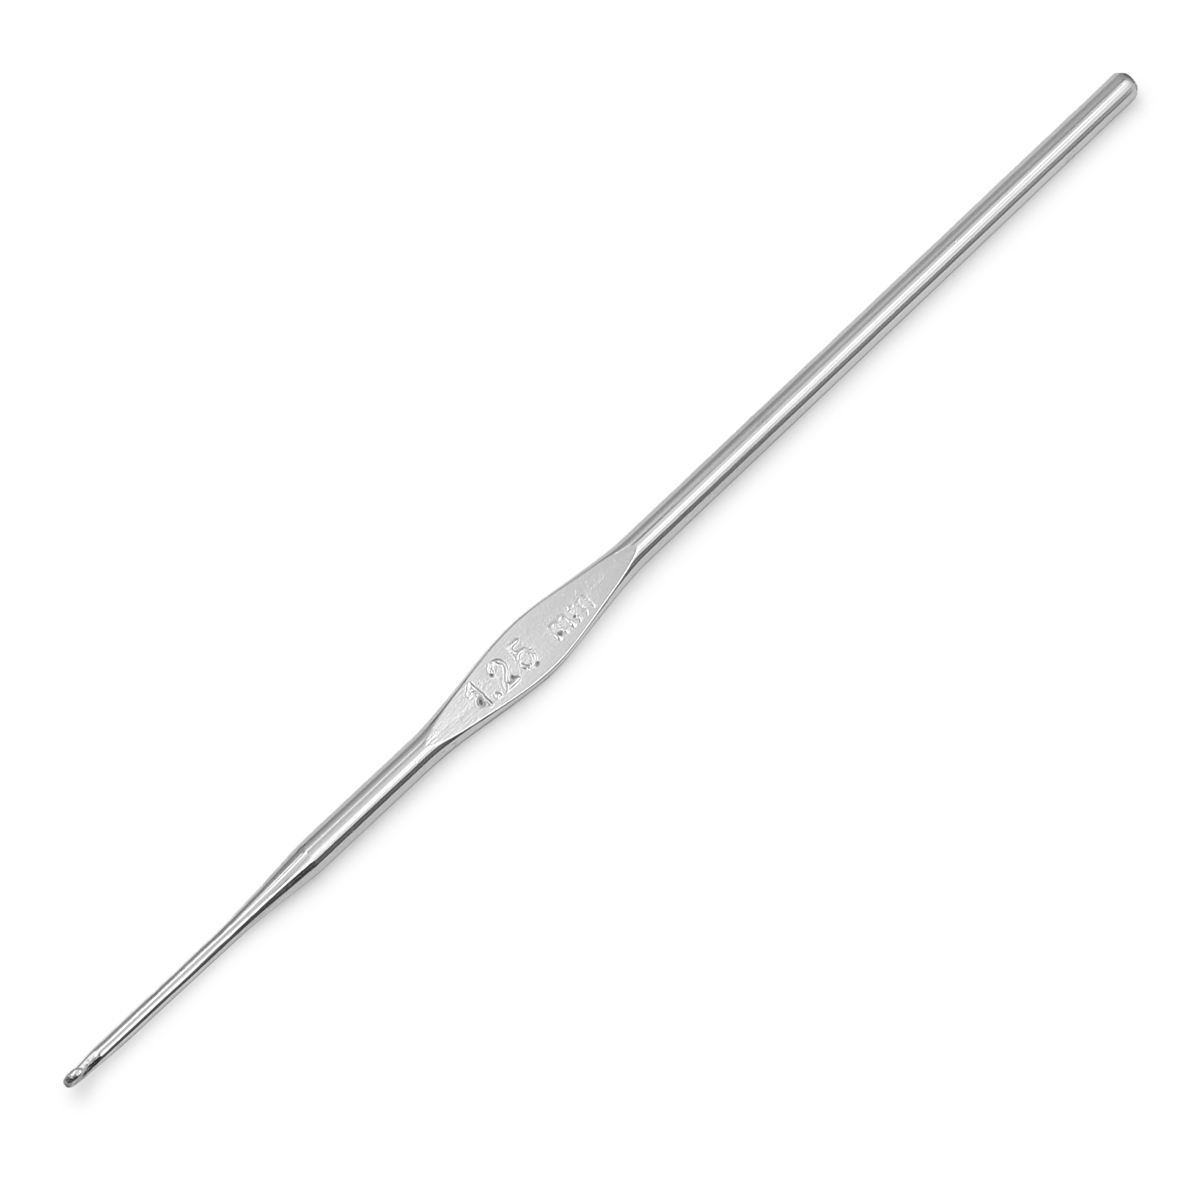 Крючок для вязания Steel 1,25мм, сталь, серебро, KnitPro